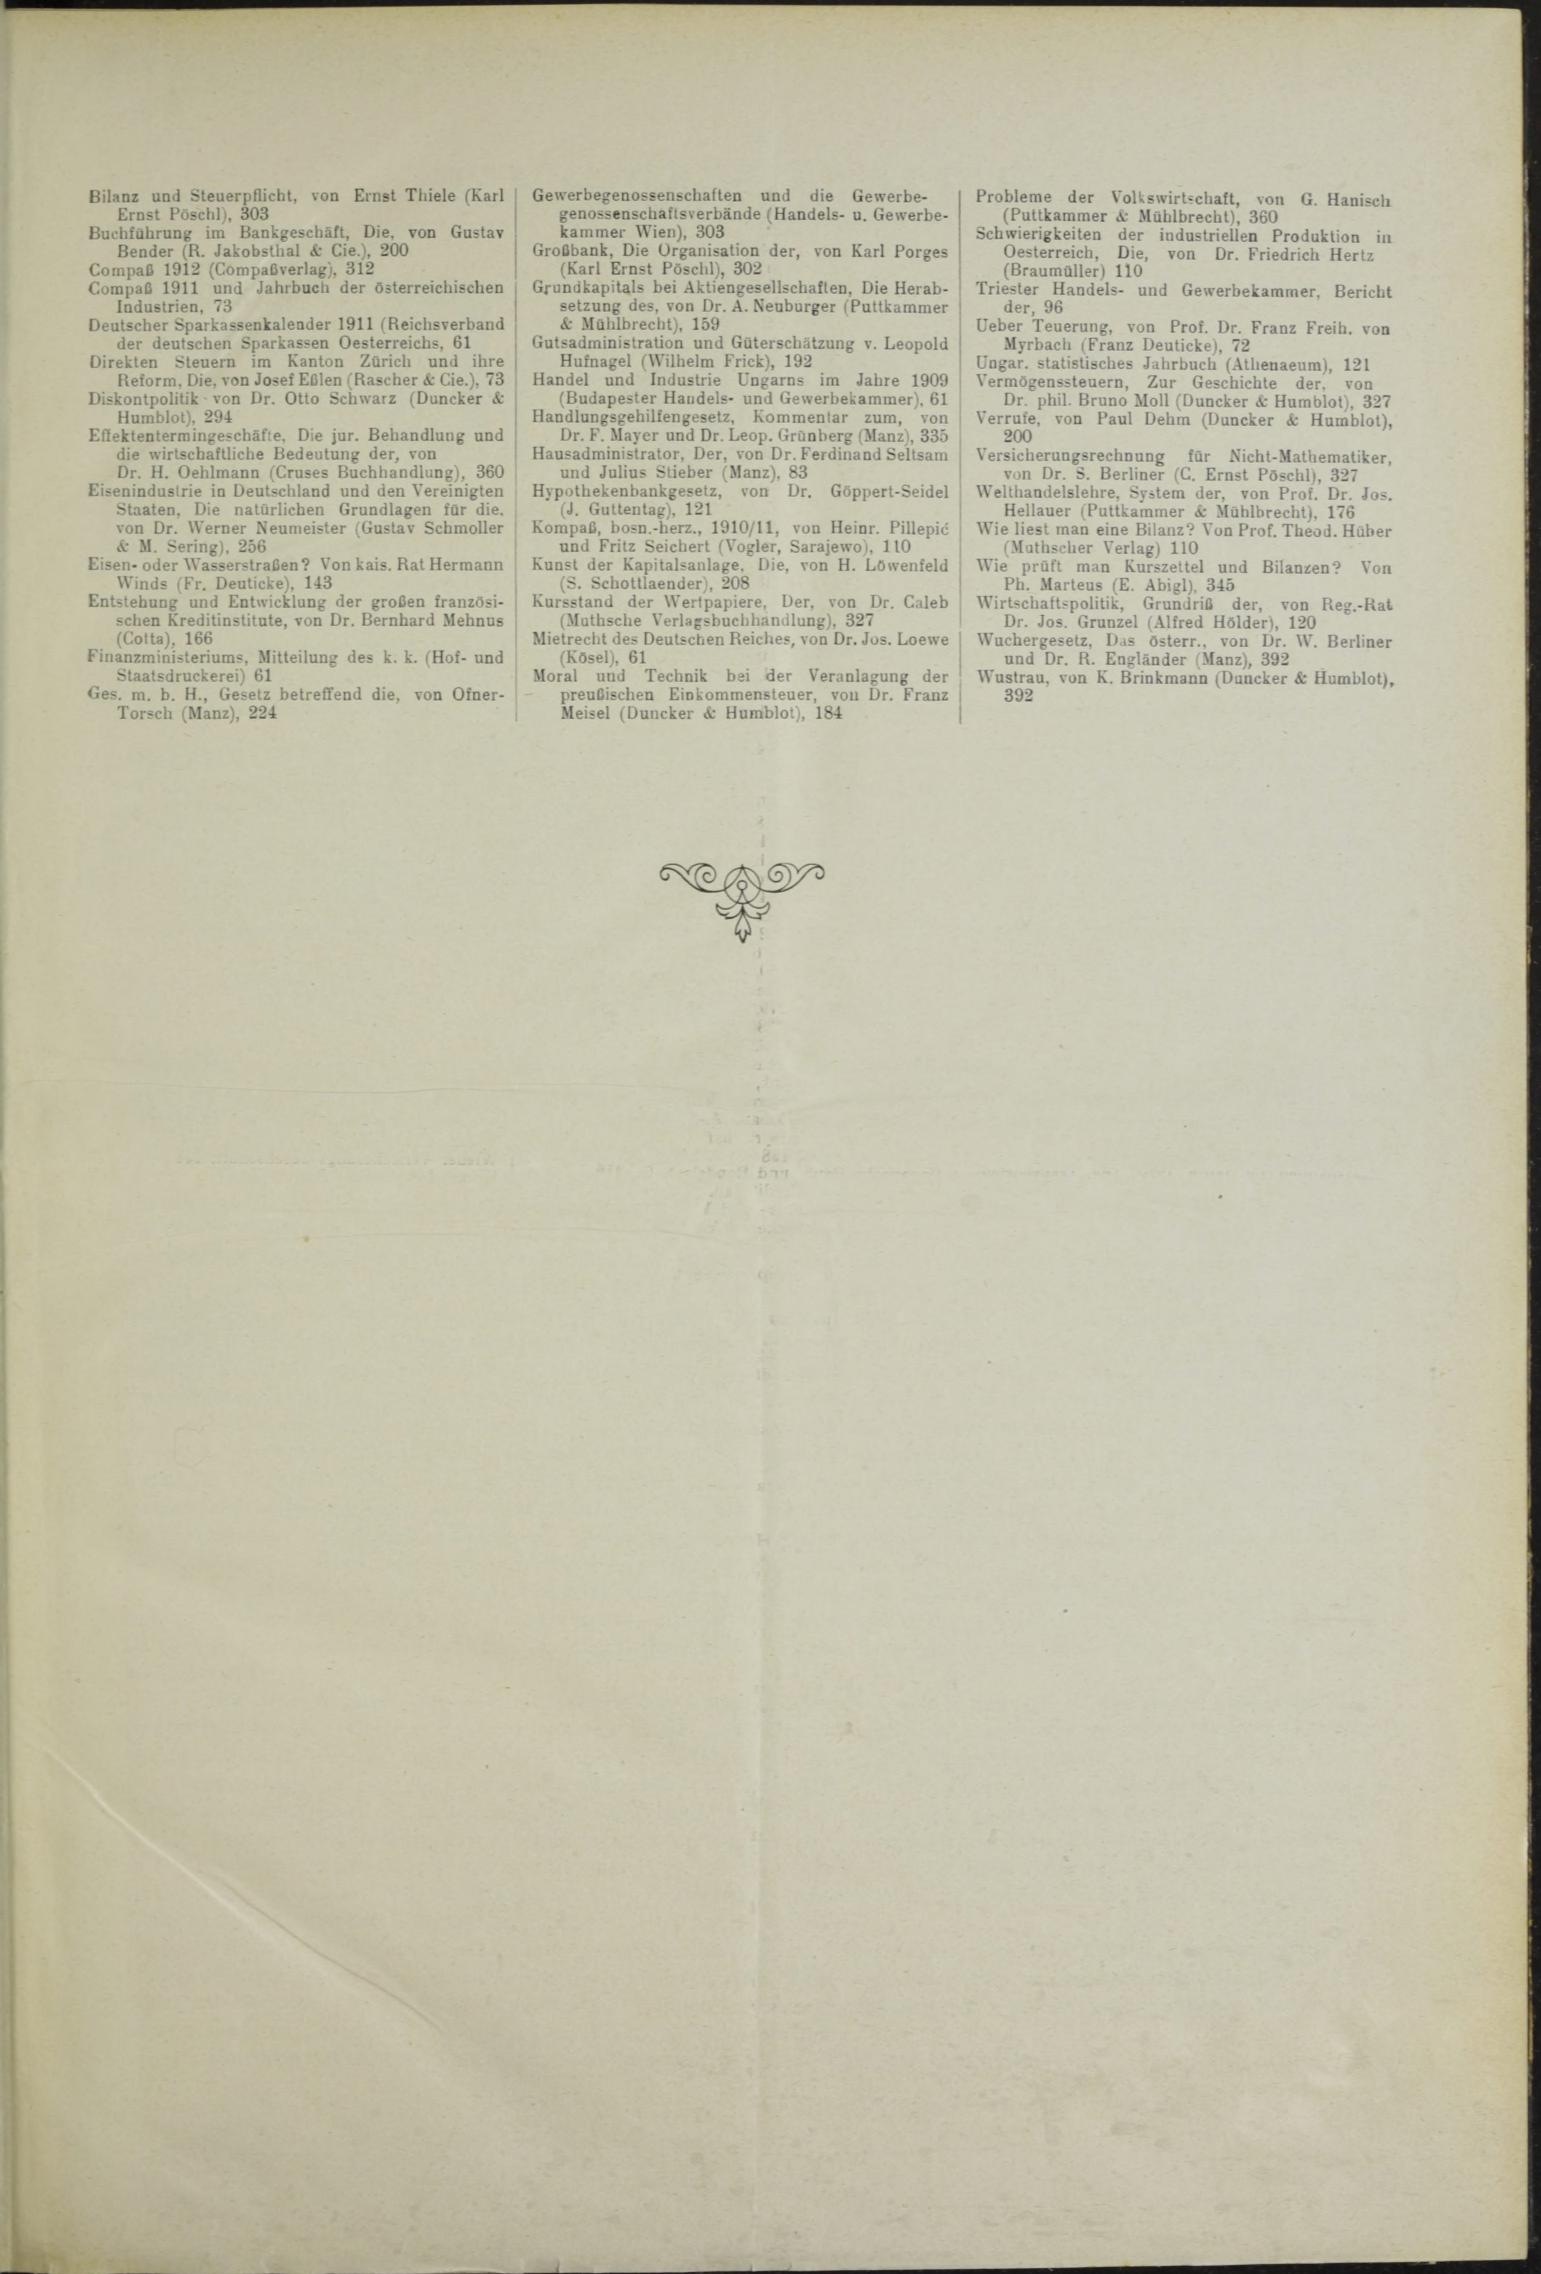 Der Tresor 12.08.1911 - Seite 11